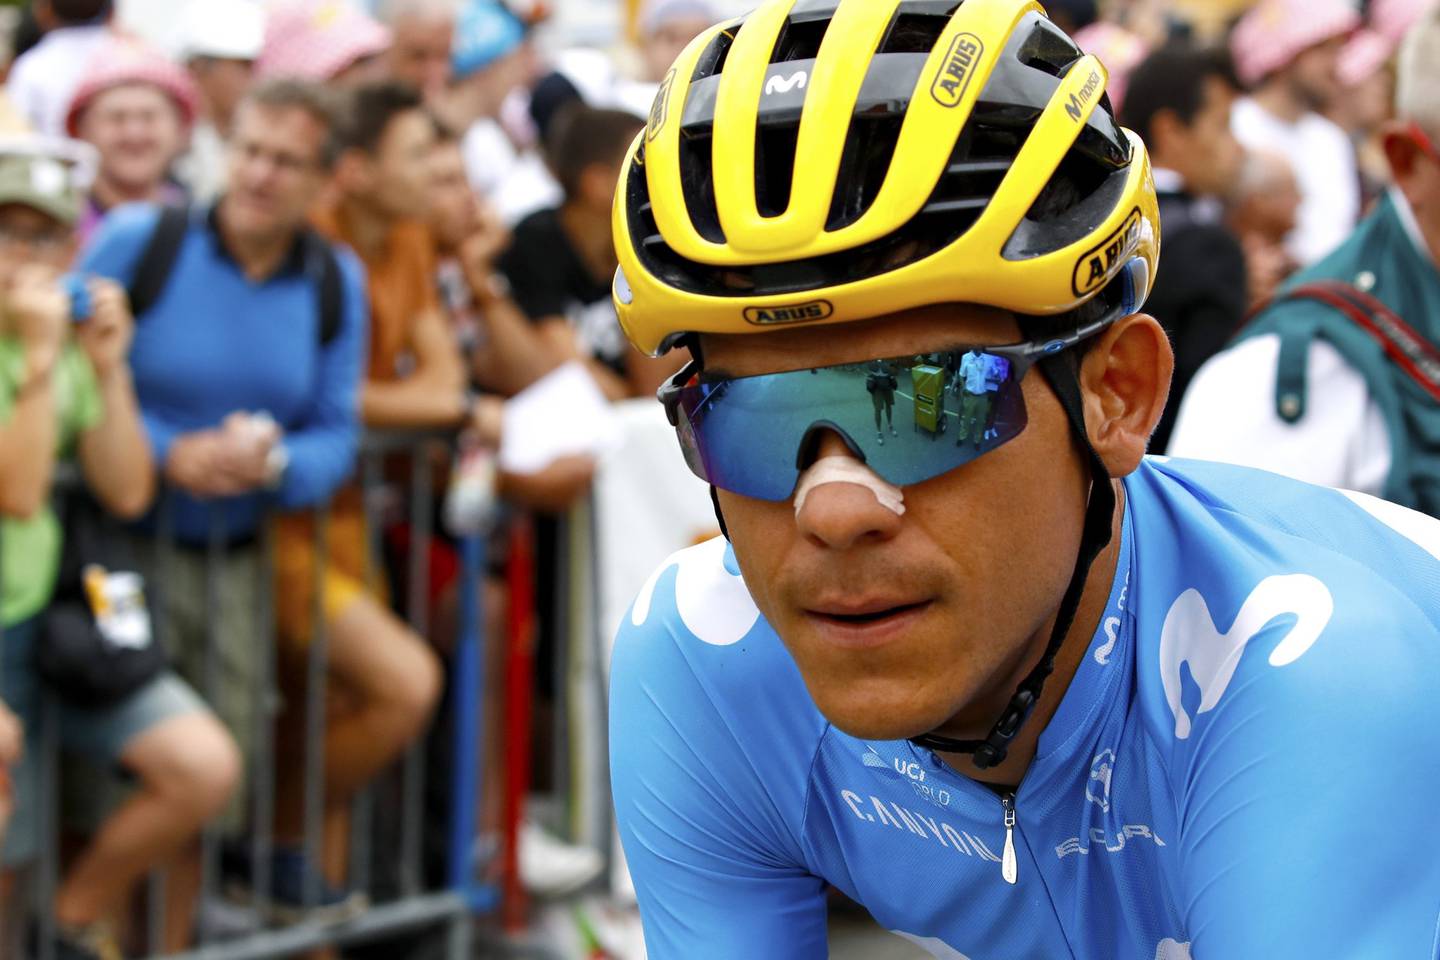 Andrey Amador volvió a lucirse con su trabajo en el Tour de Francia. Fotografía: Bettini / Movistar Team